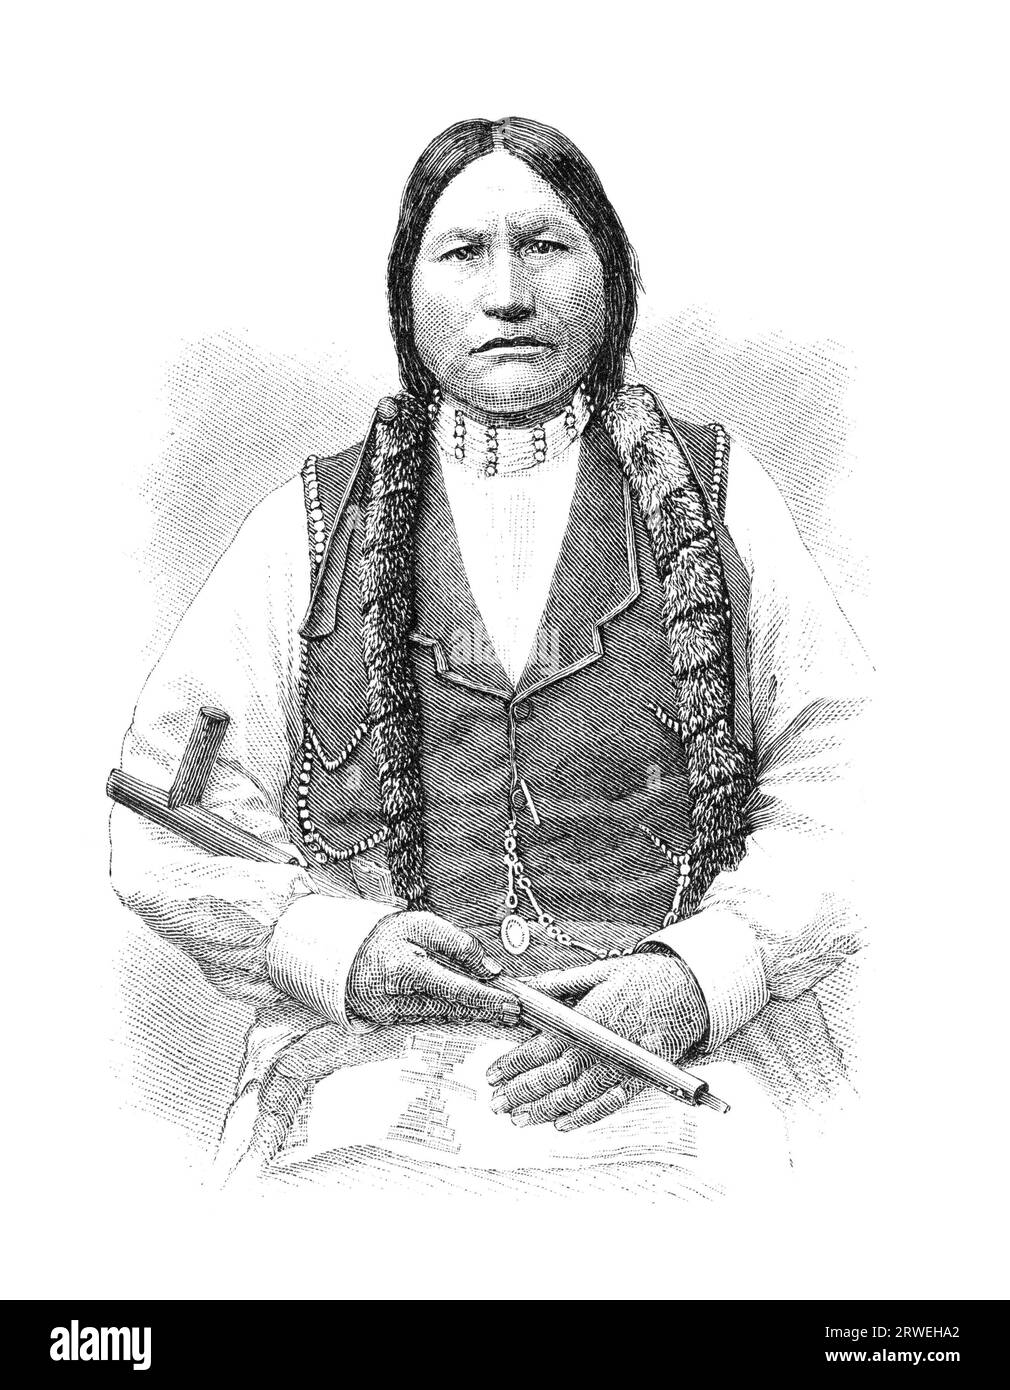 Arapaho-Indianer namens Black Coal. Die Arapaho sind ein Stamm der Ureinwohner, die historisch in den östlichen Ebenen von Colorado und leben Stockfoto